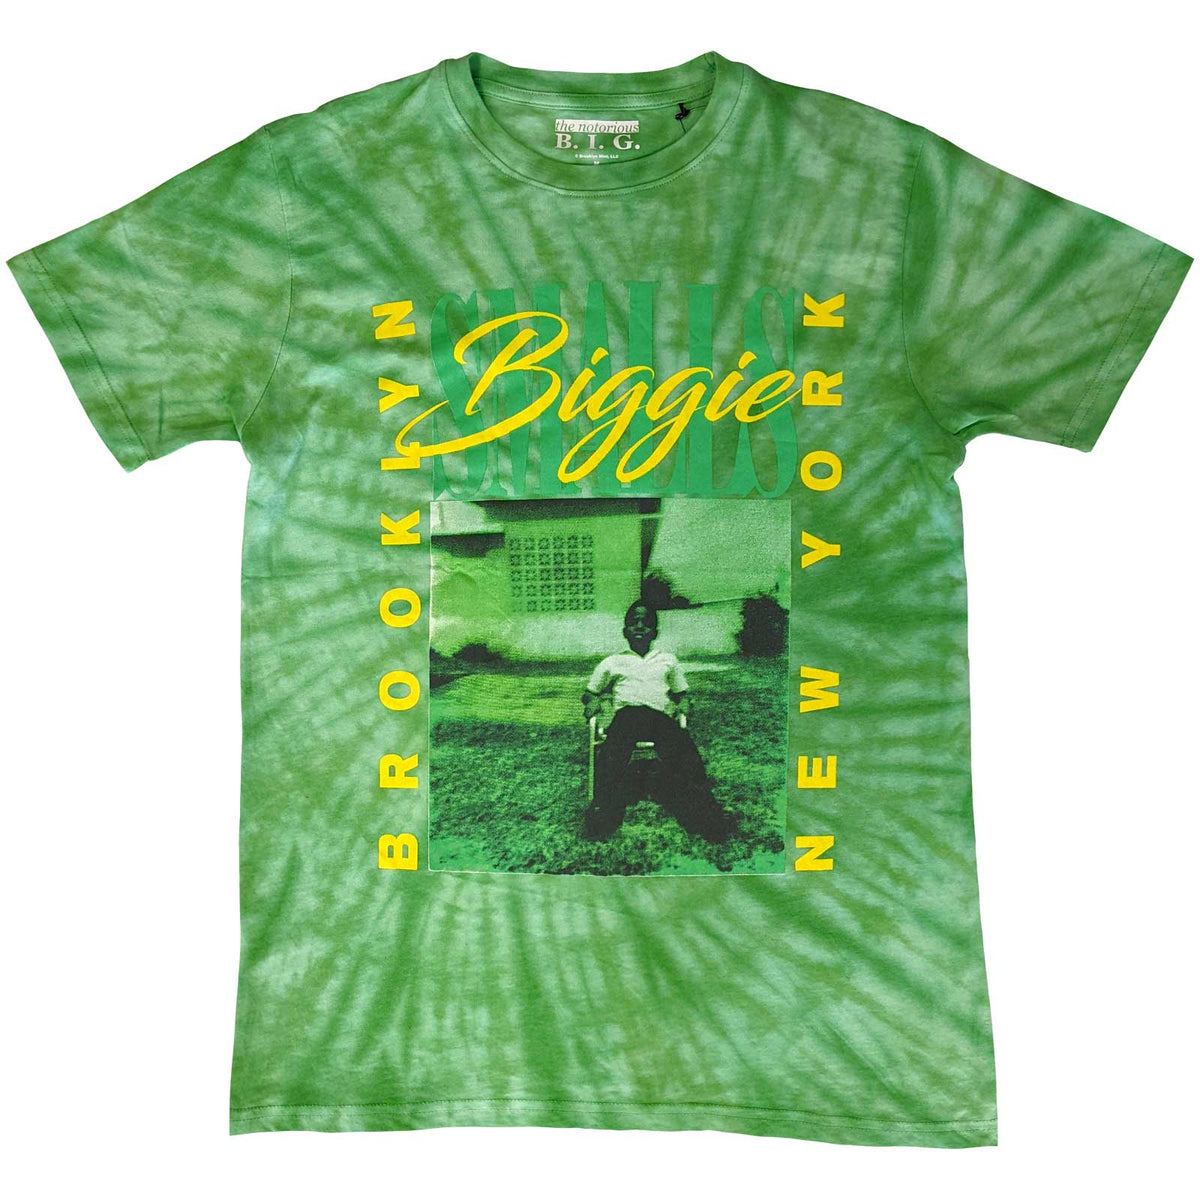 Biggie Smalls T-Shirt für Erwachsene – New York City der 90er Jahre (Wash-Kollektion) – offiziell lizenziertes Design